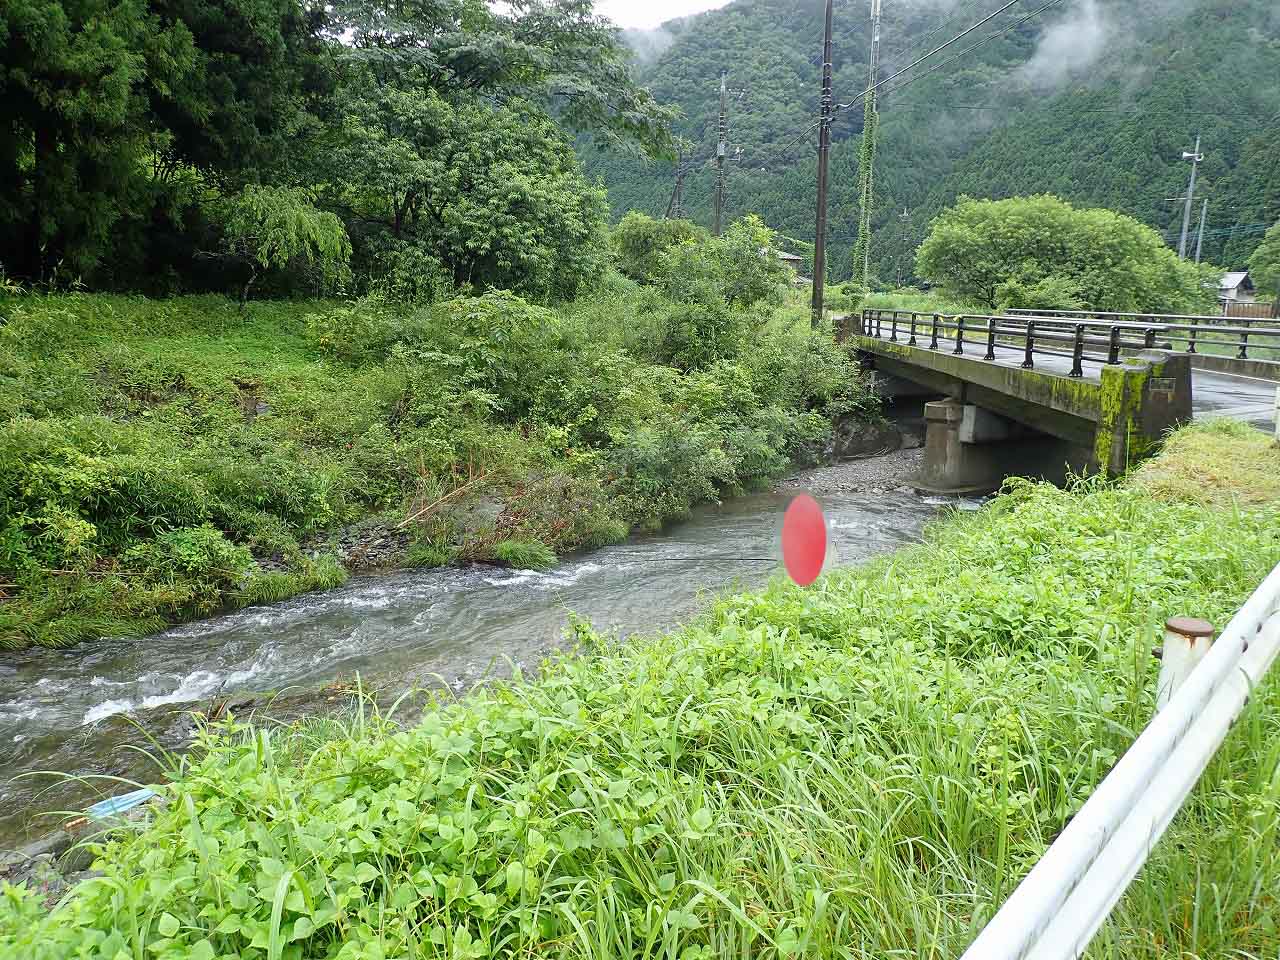 渓流釣り場紹介 野生動物の宝庫 秋山川 栃木県 でアユが釣れました 第25弾 釣りとバイクが趣味なんだ